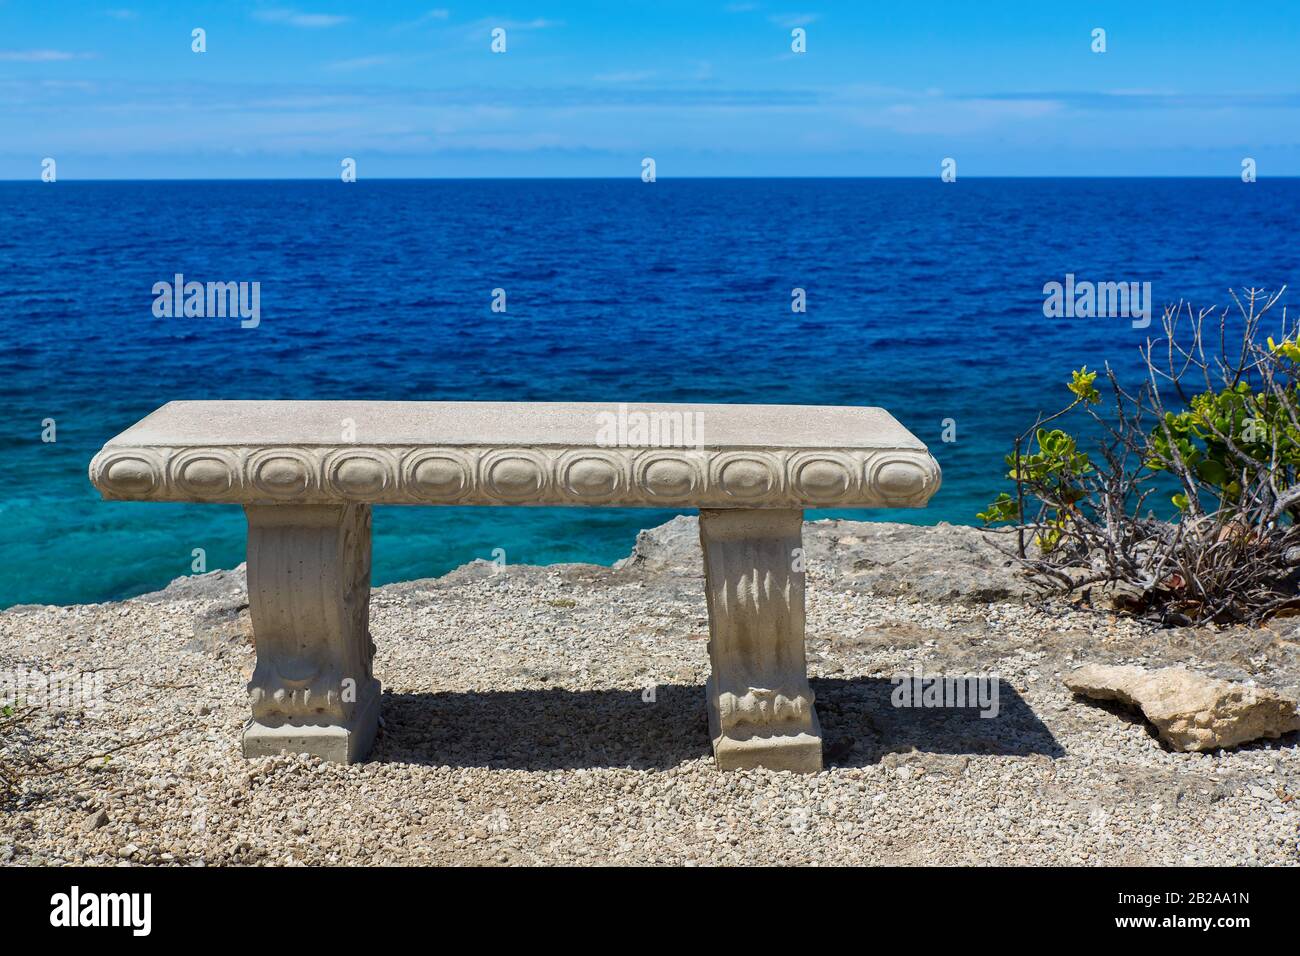 Panca vuota in cemento a riva con mare blu sull'isola Bonaire Foto Stock